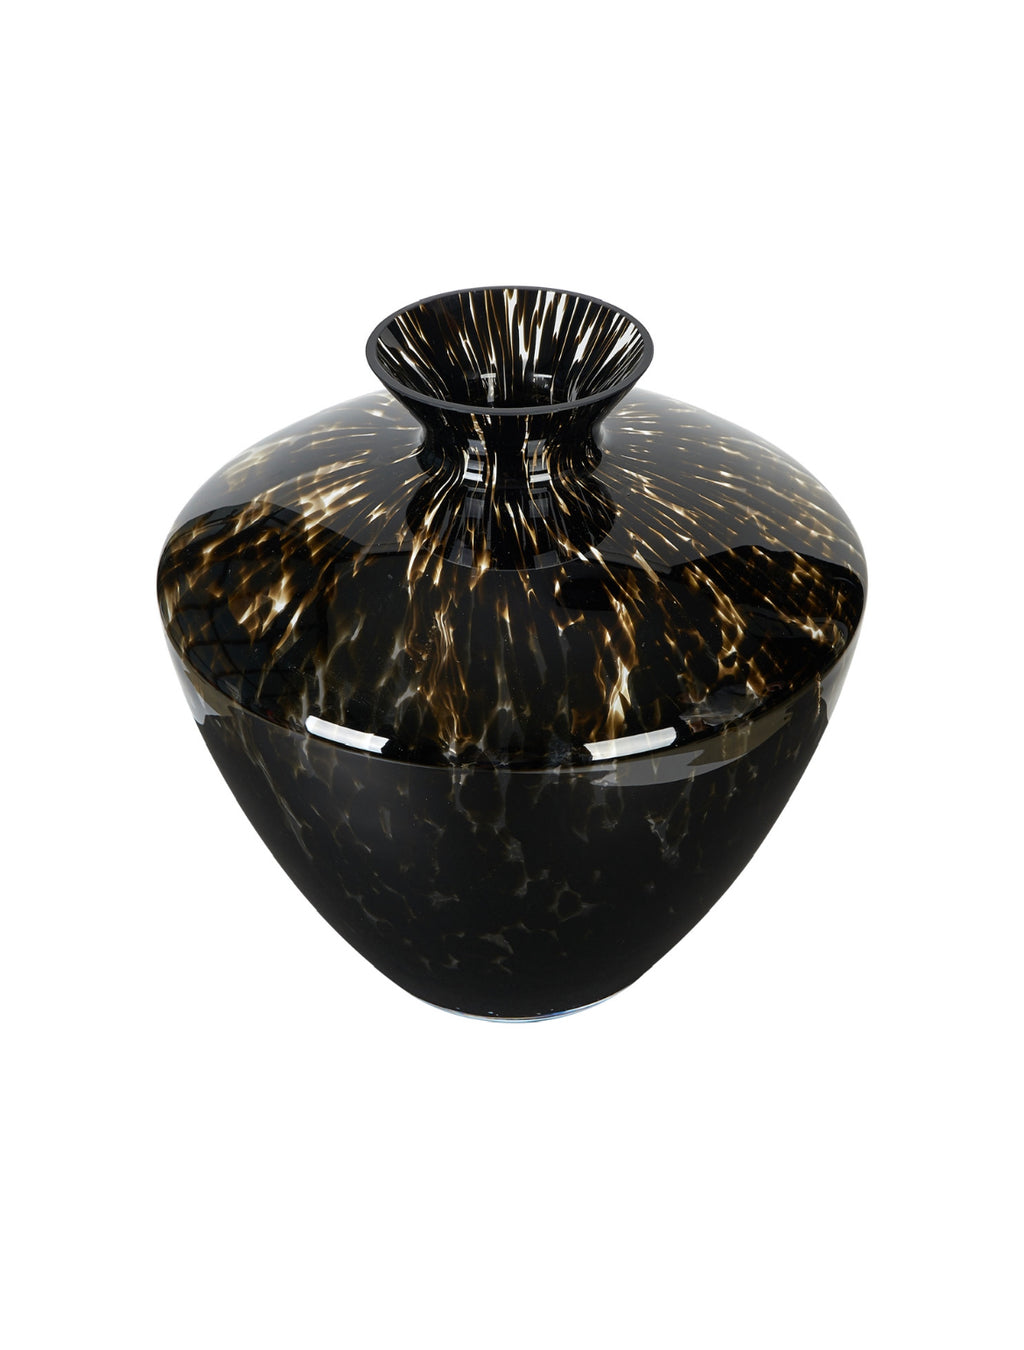 Large Vintage Handblown Tortoiseshell Vase